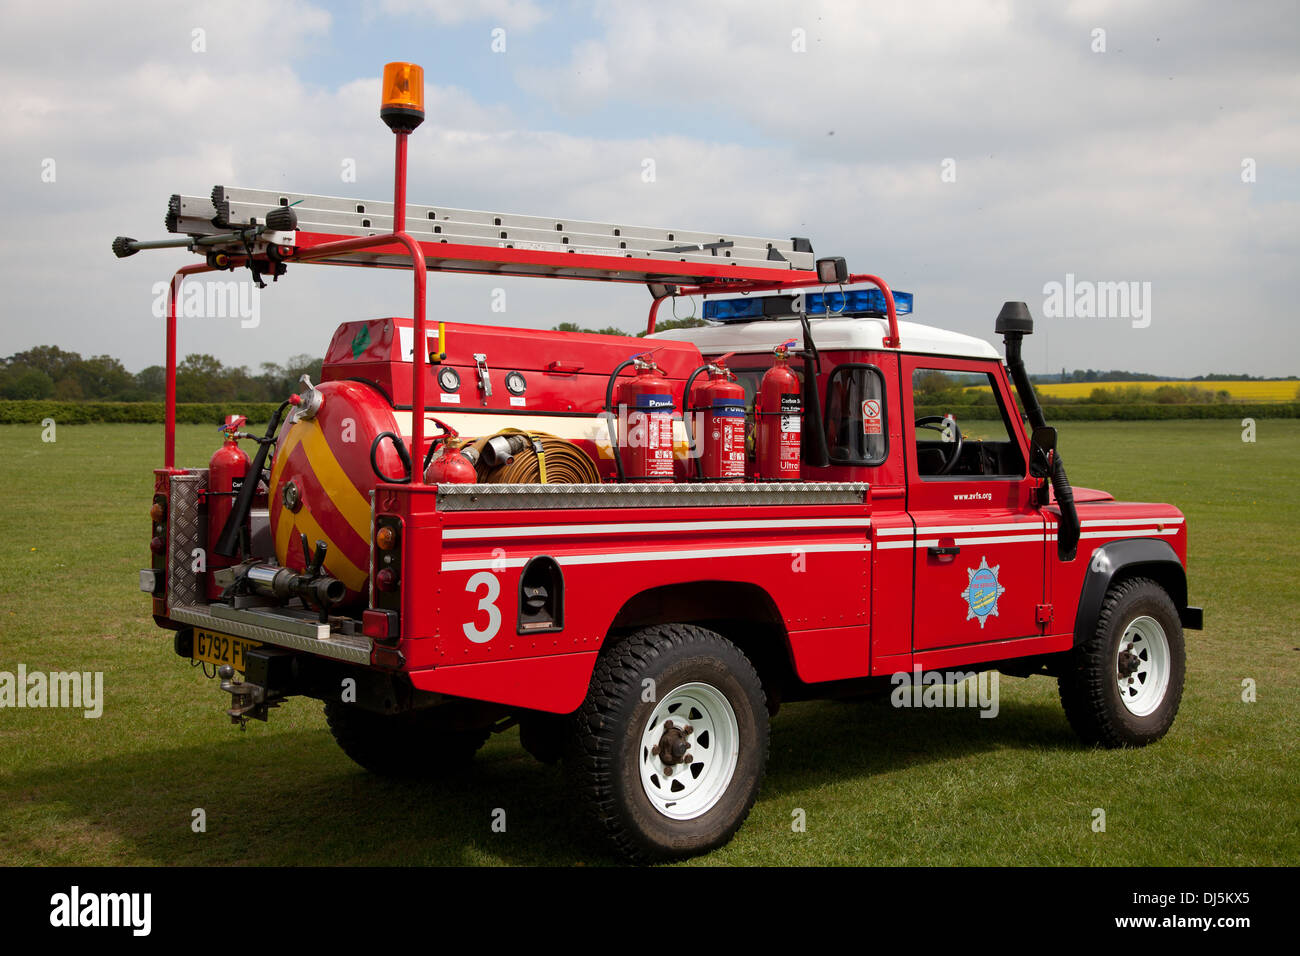 Ein Feuerwehrauto für daheim